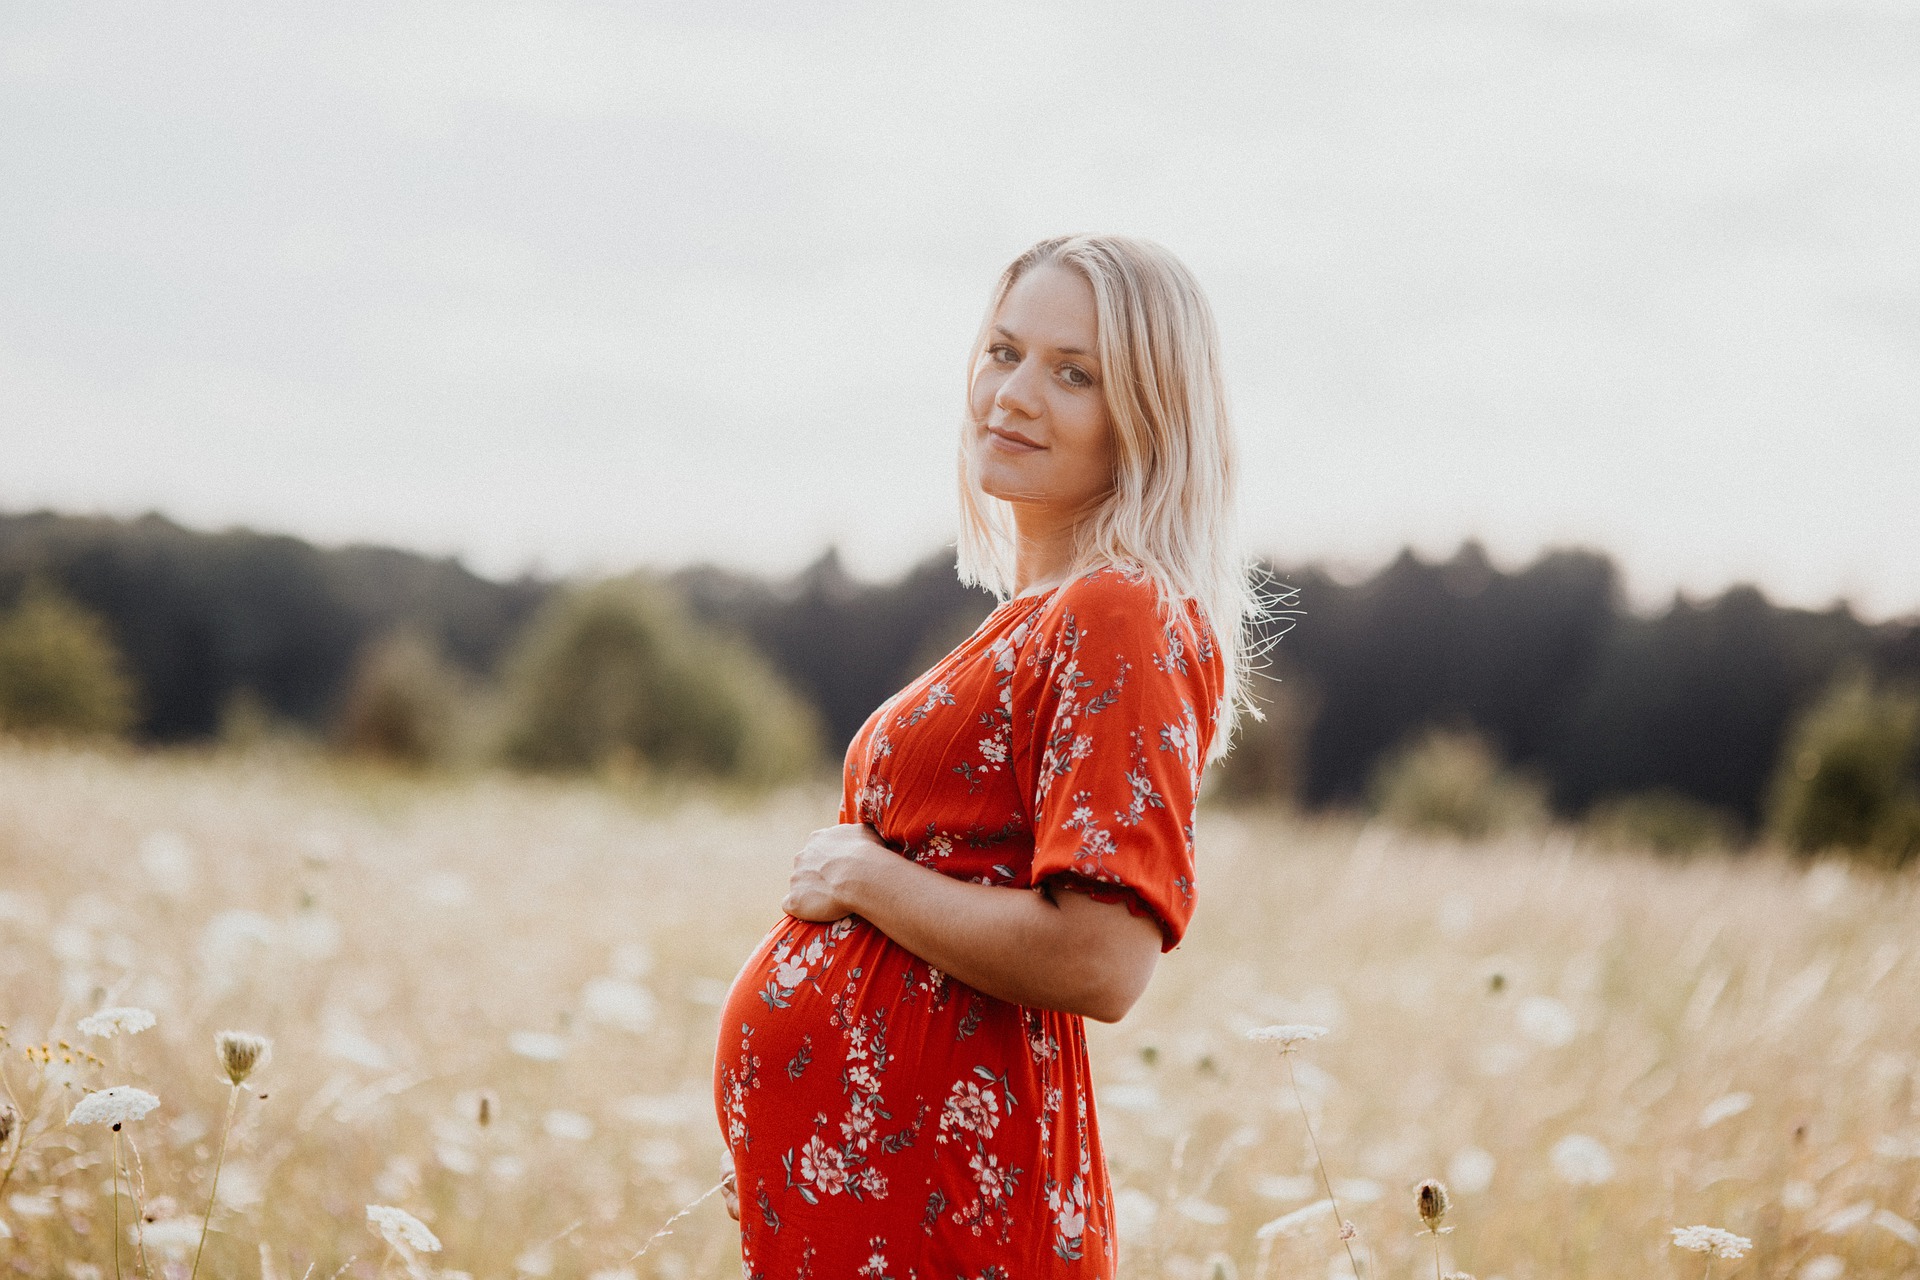 המדריך להריונית: כל מה שצריך לדעת על תזונה נכונה בהריון